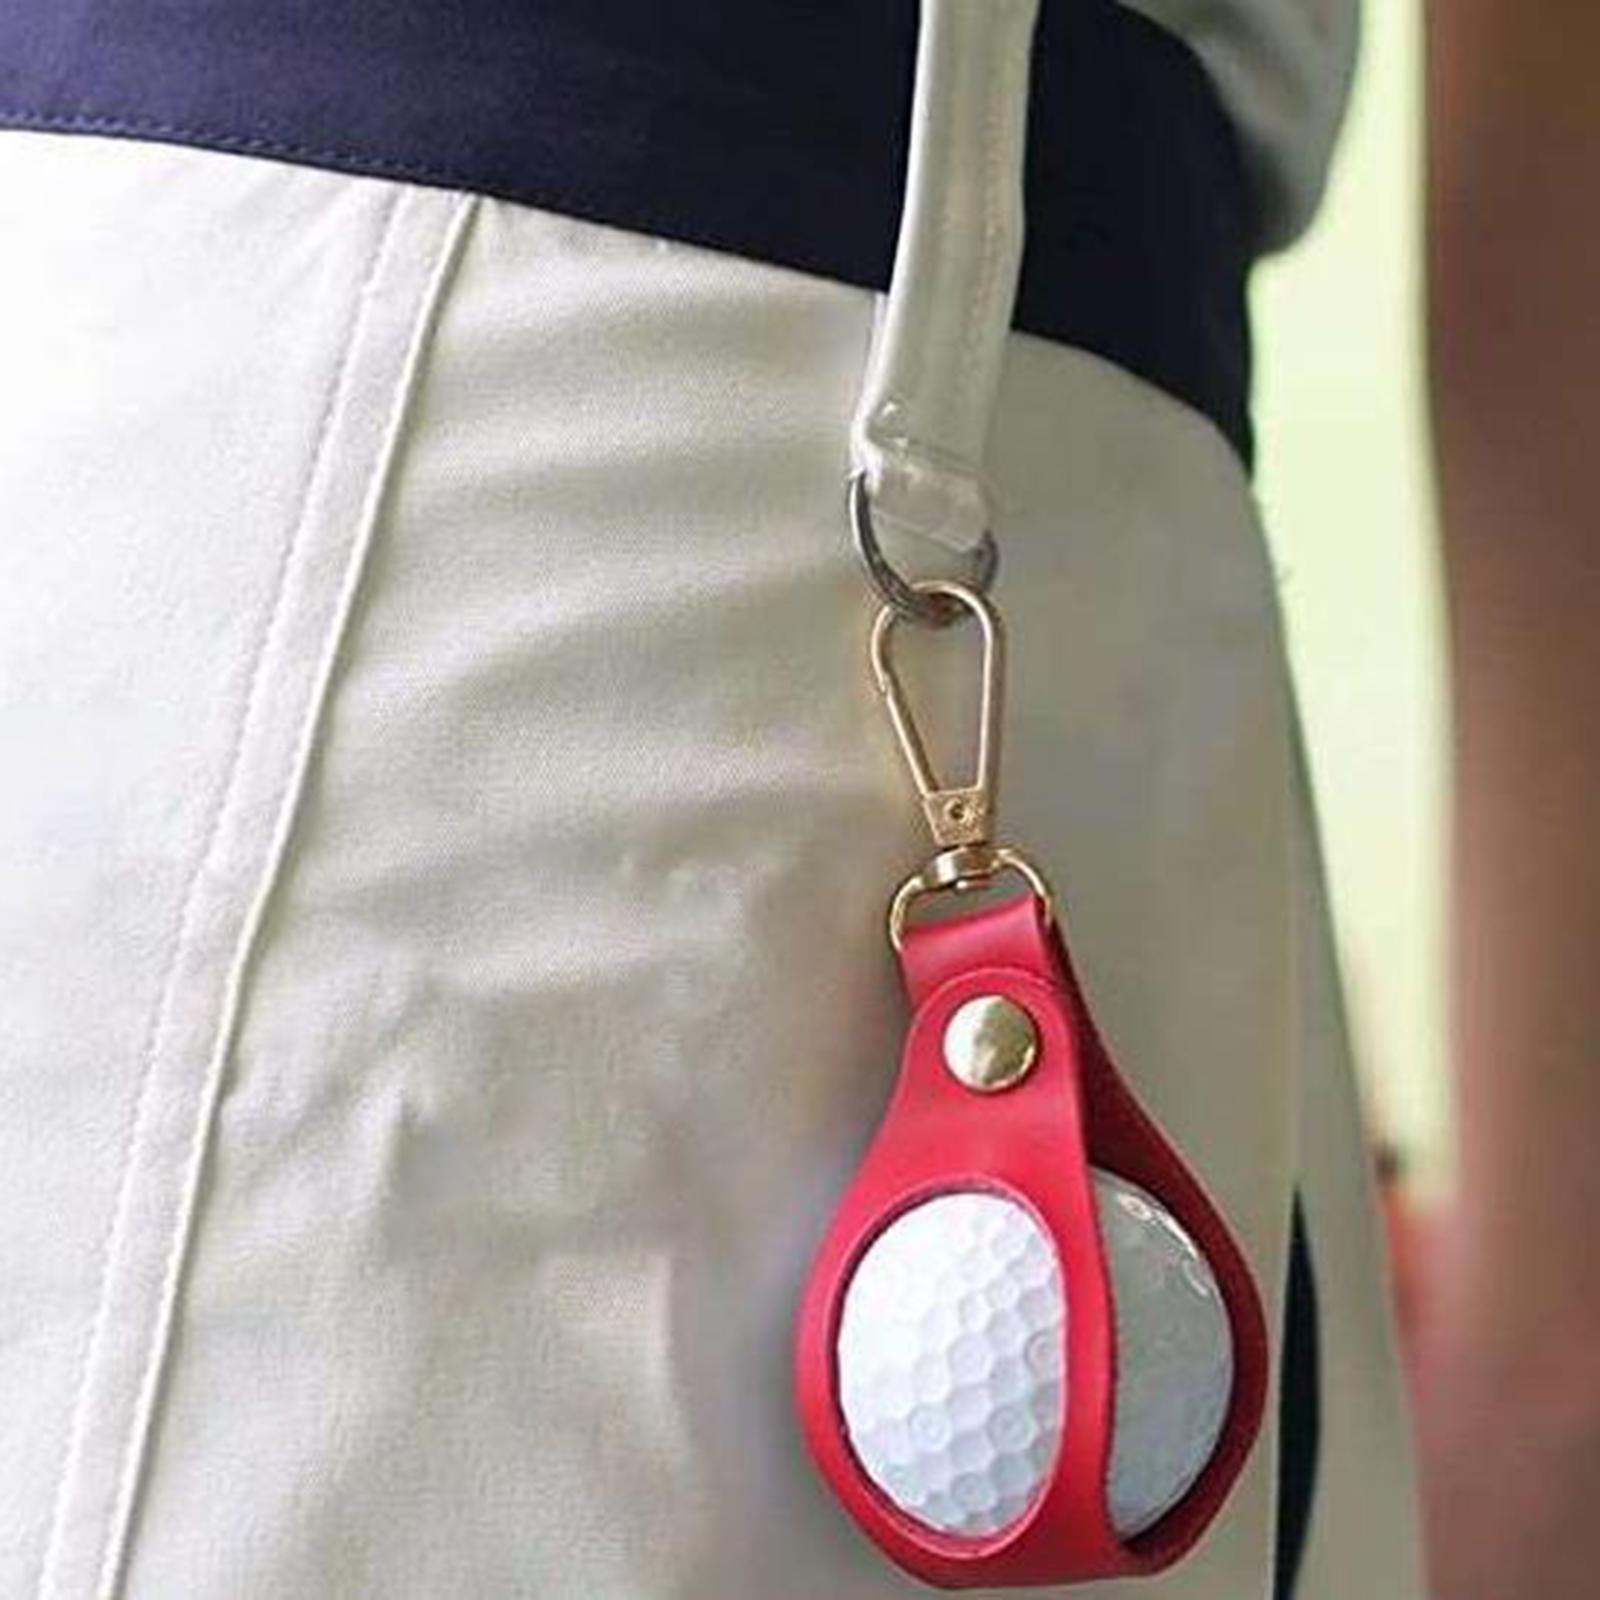 Golf Ball Waist Bag Golf Ball Pouch Fanny Pack Training Ball Bag Holder Red